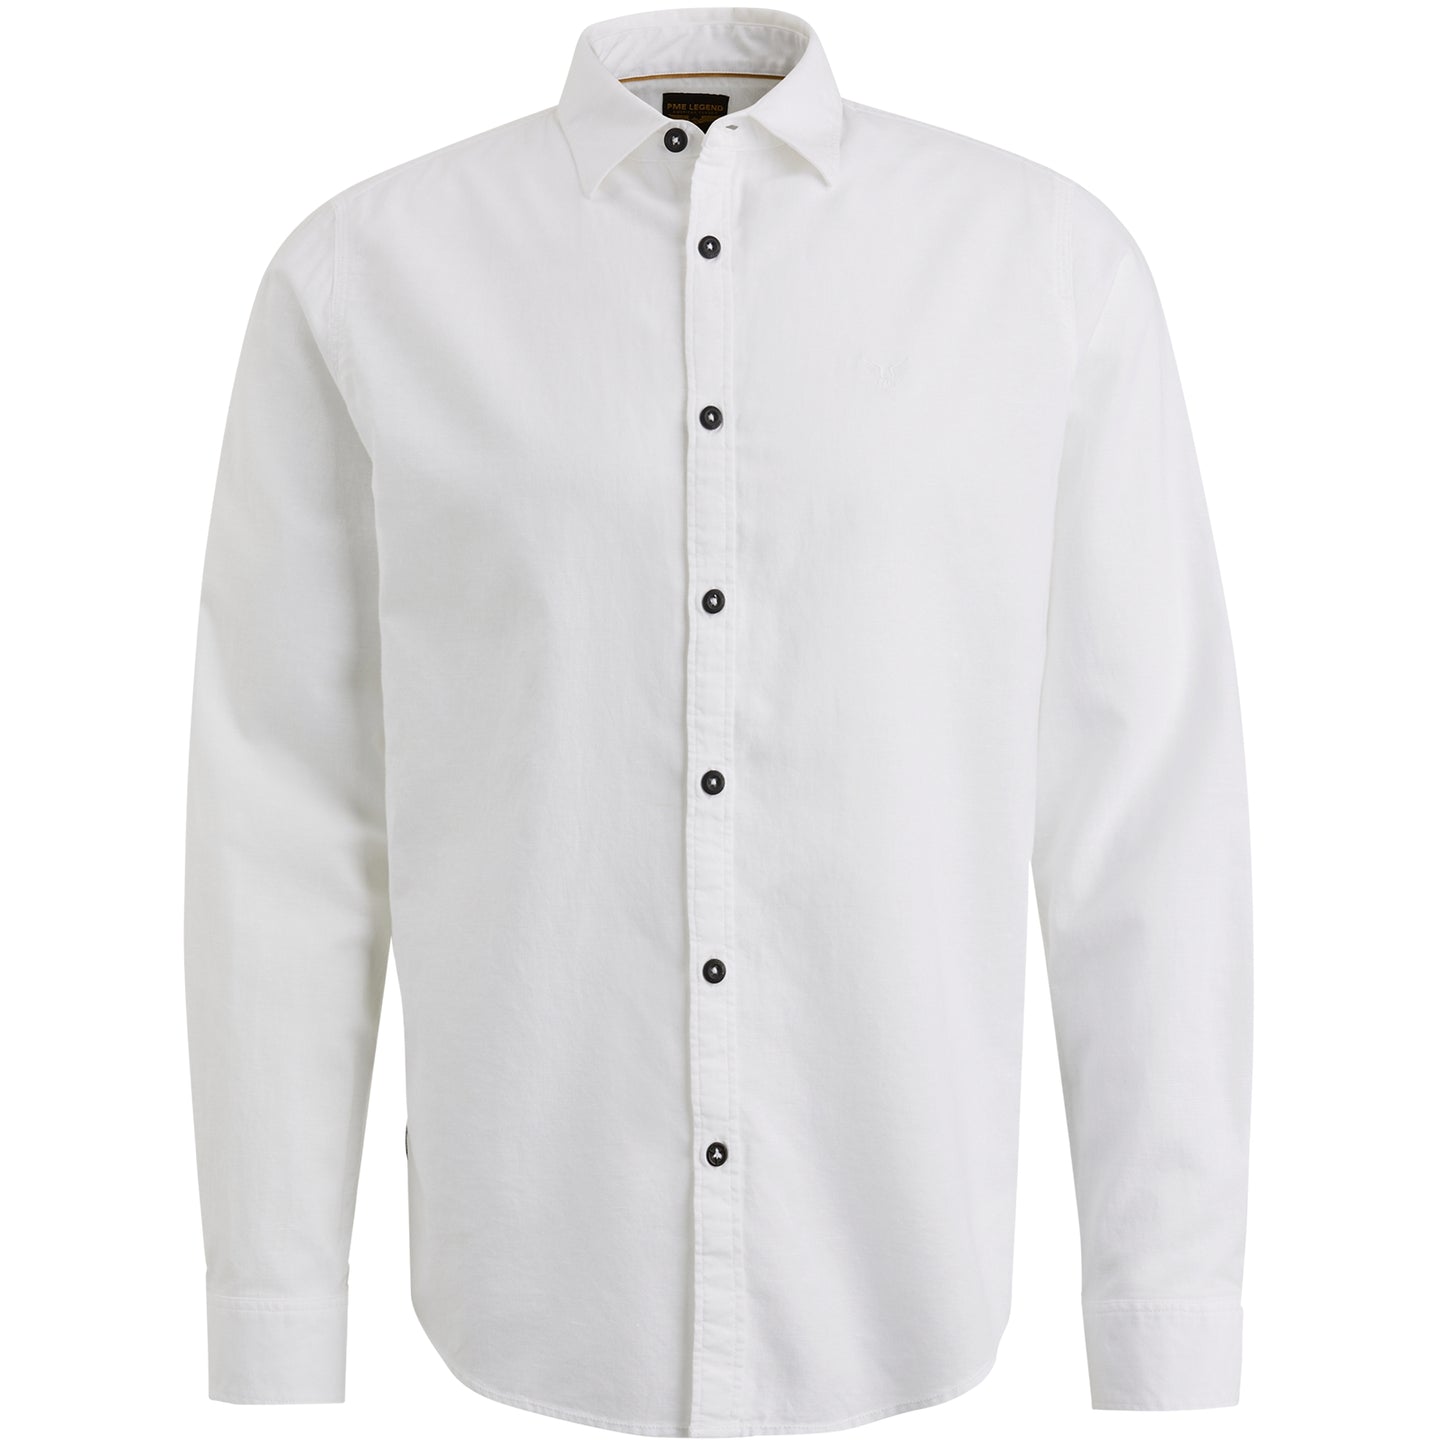 Long Sleeve Shirt Ctn/Linen